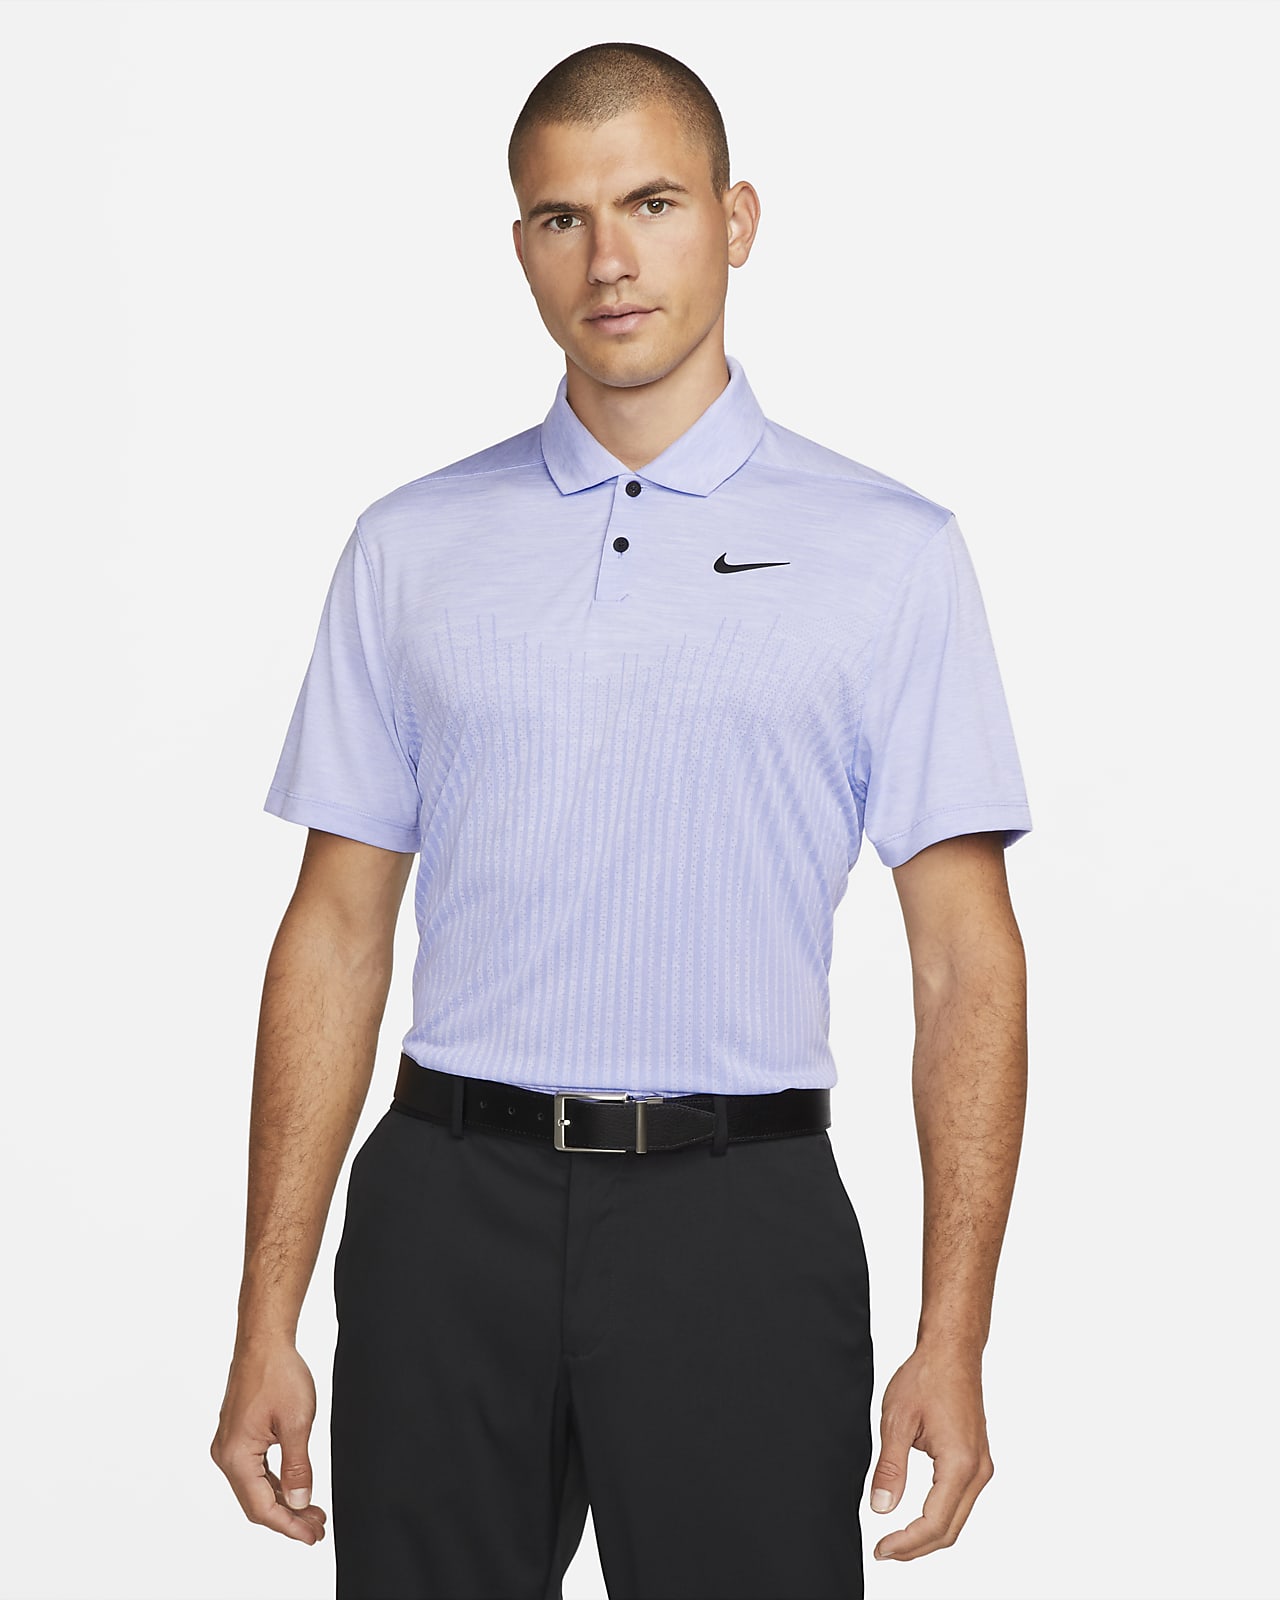 Nike Dri-FIT ADV Vapor speciális férfi golfpóló